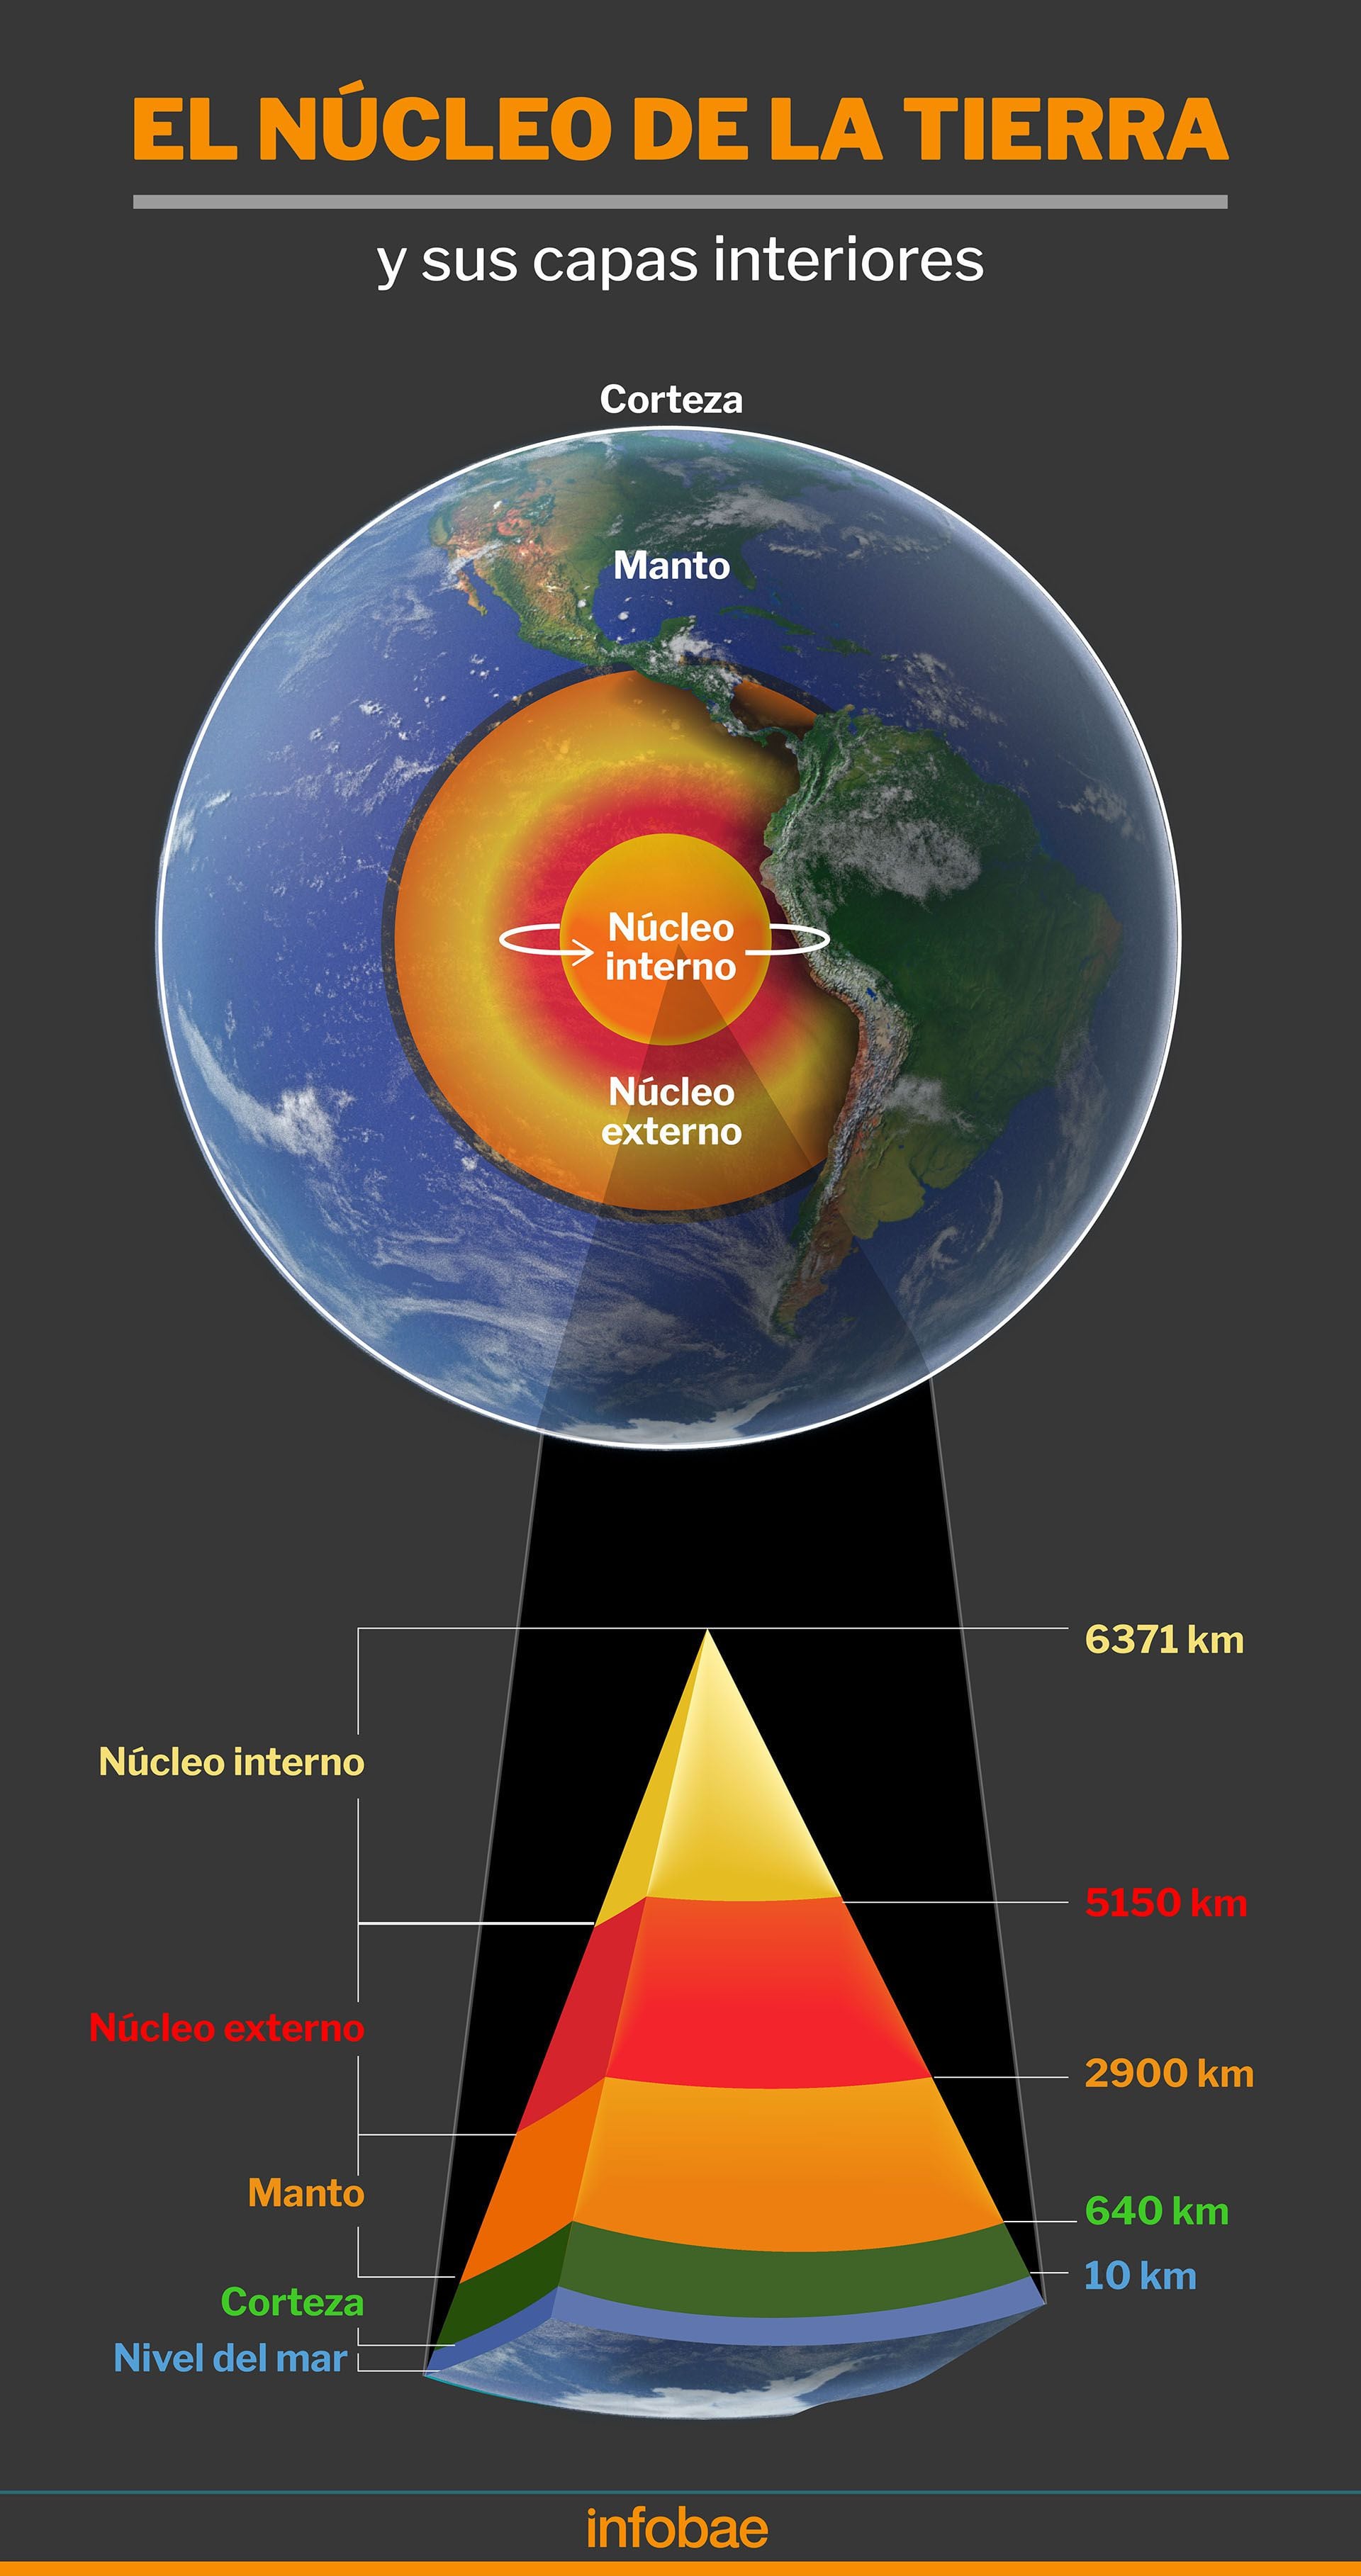 El núcleo de la Tierra es el que determina el eje del planeta habitualmente. Pero el uso de las aguas subterráneas y su explotación inciden en él, afirman los científicos surcoreanos